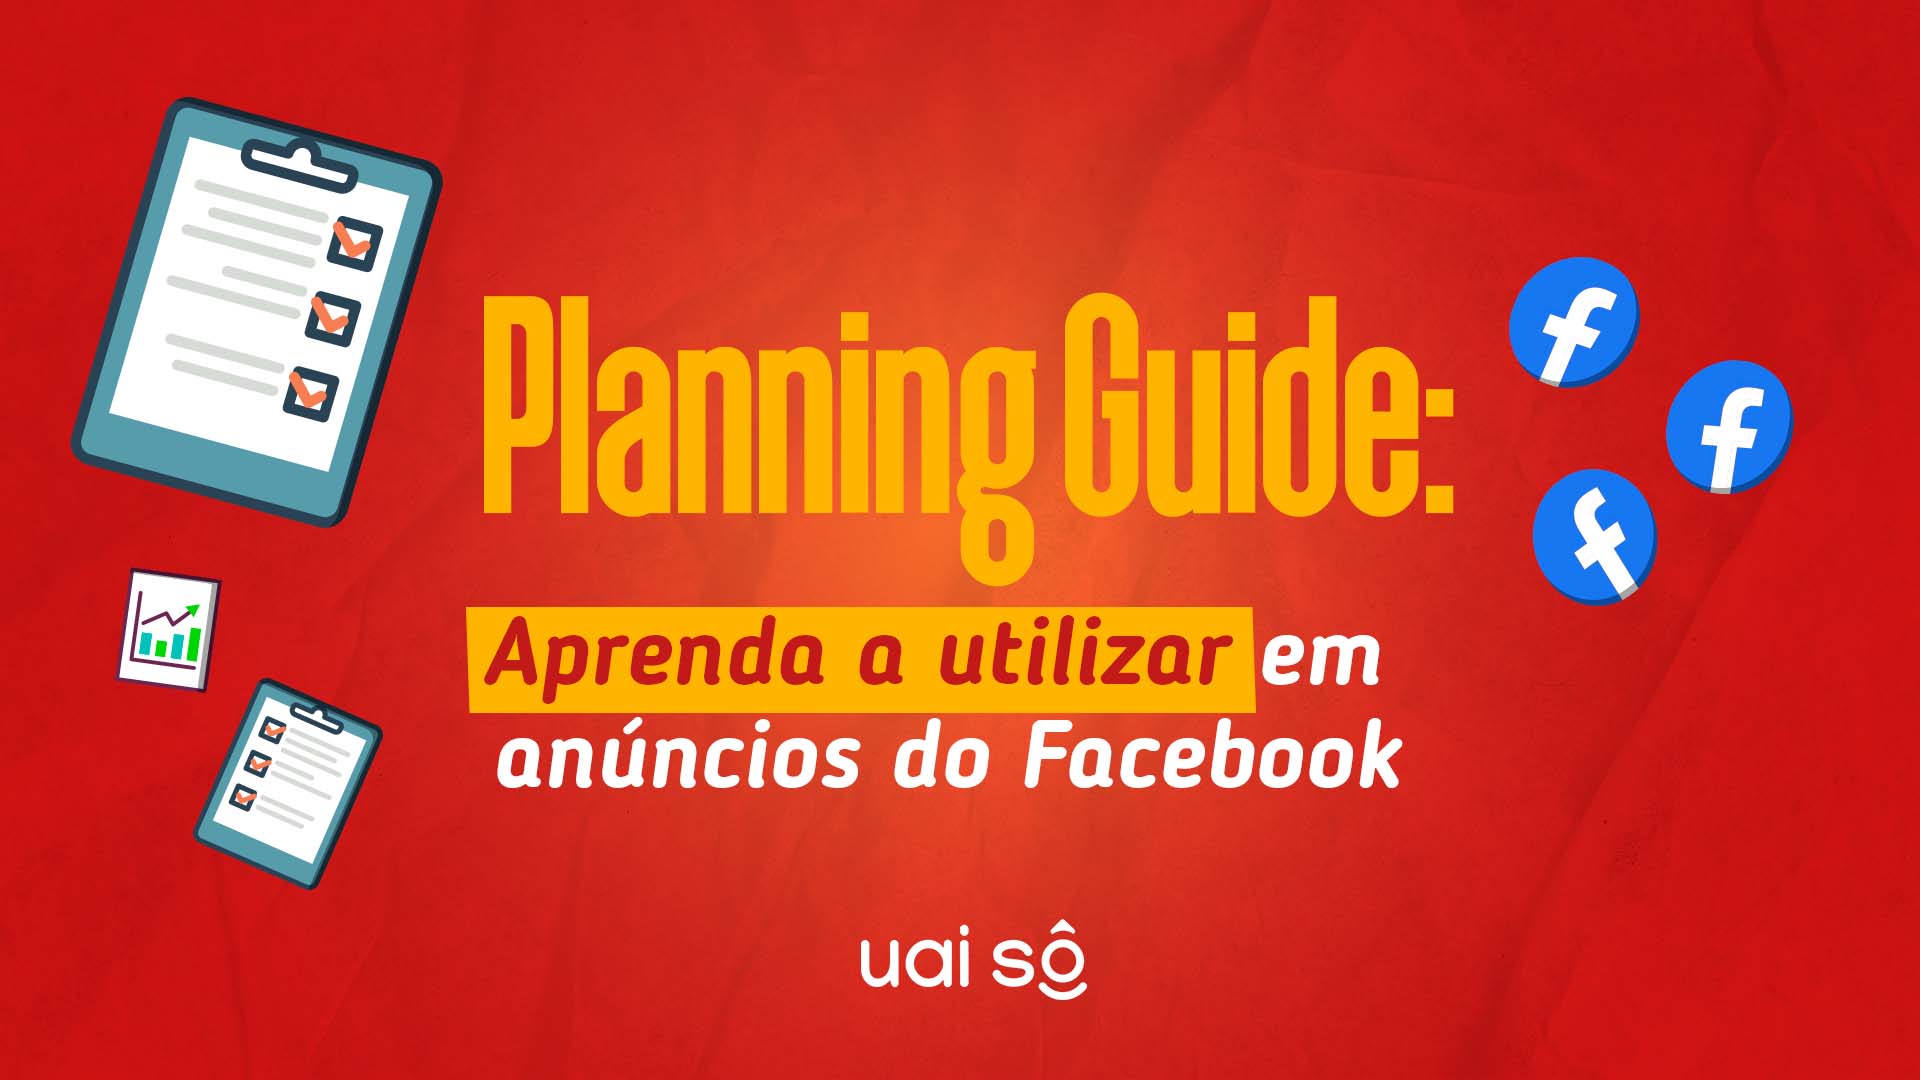 Planning Guide: aprenda a utilizar em anúncios do Facebook - Uai Sô!